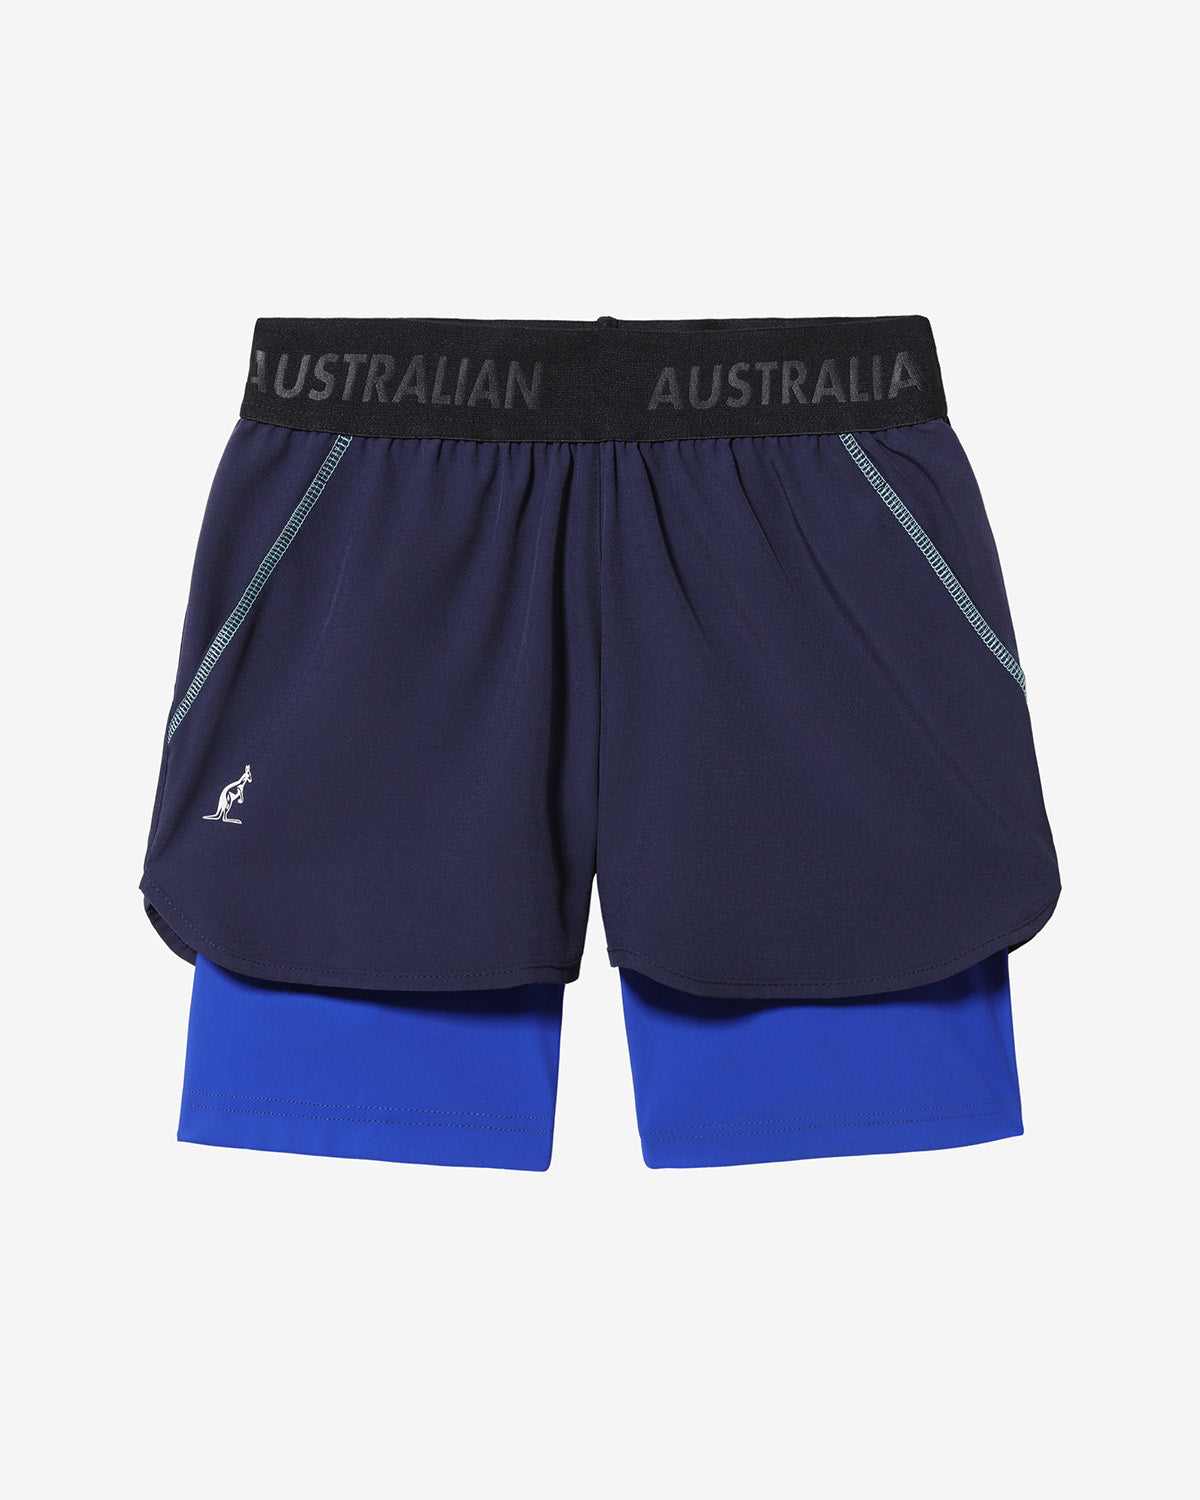 Match Short: Australian Tennis